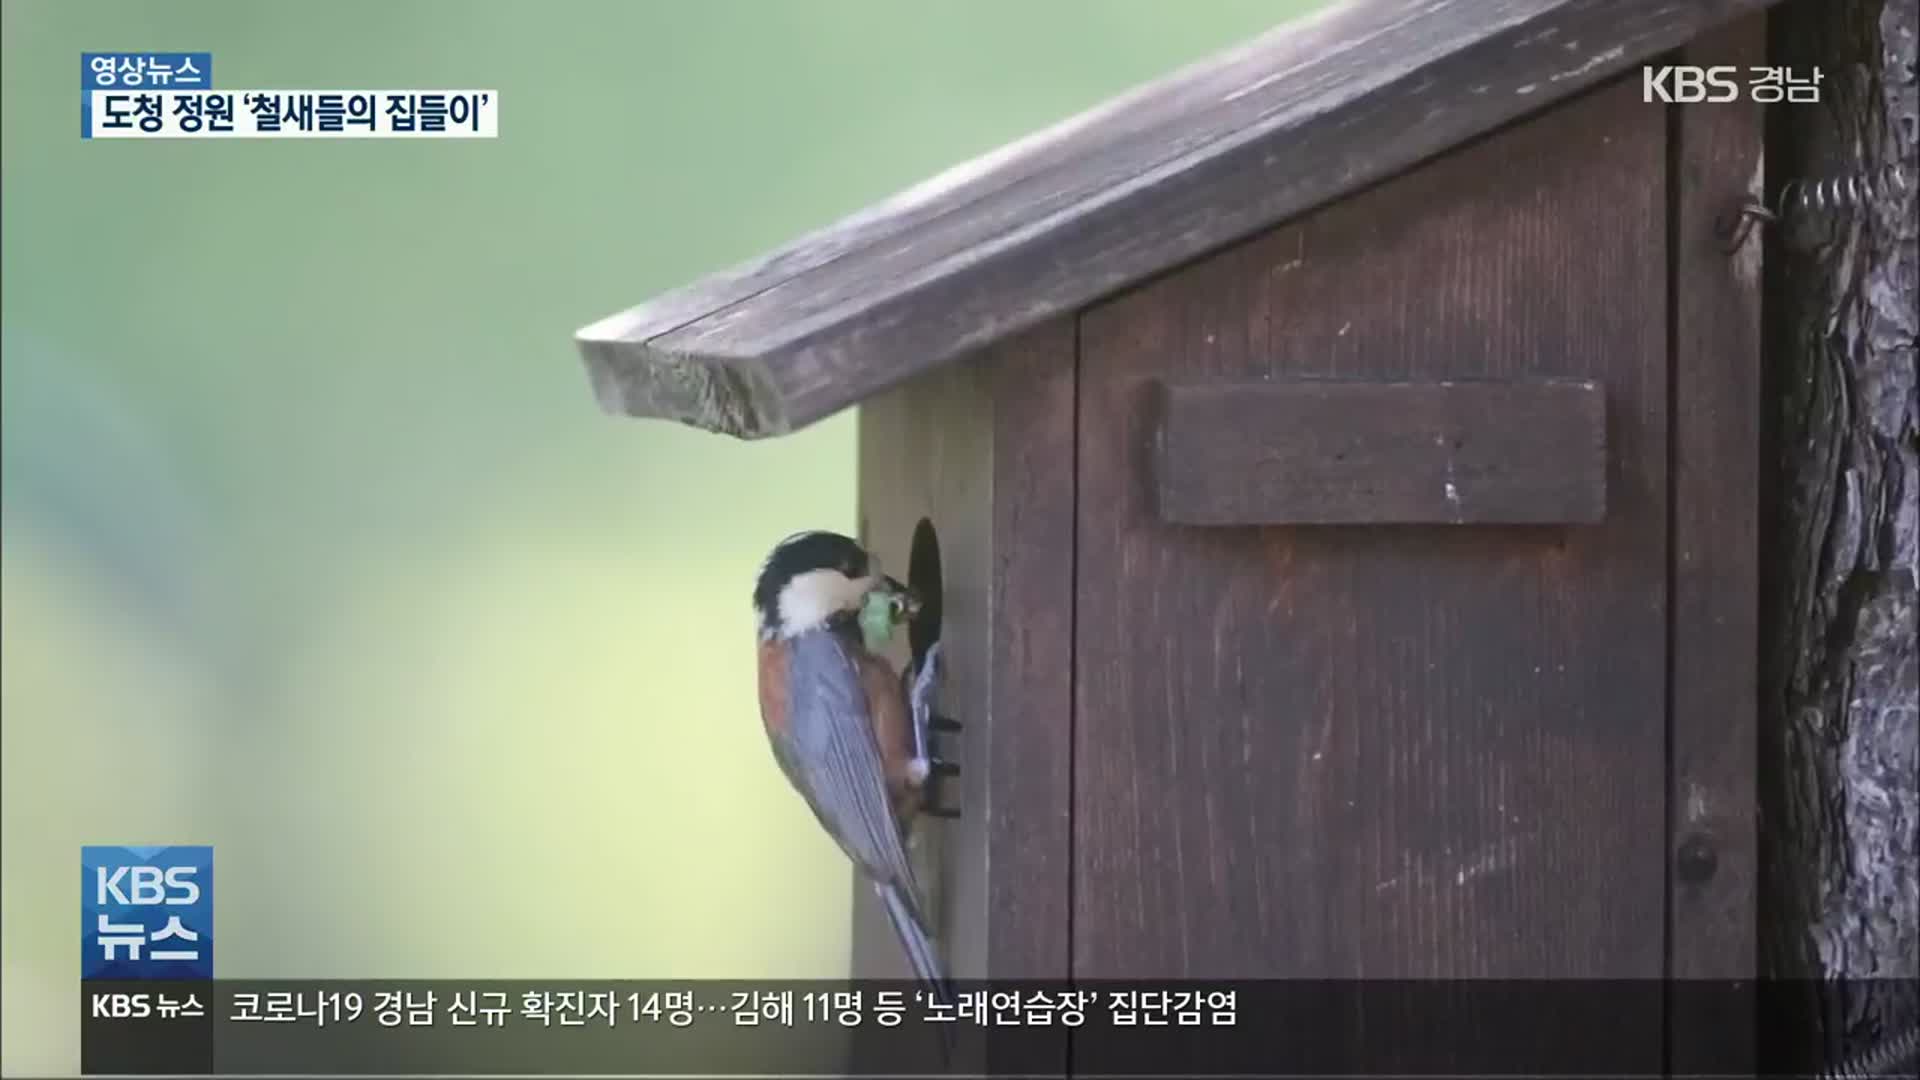 [영상] “새집이 생겼어요!”…‘도청 철새들’의 집들이